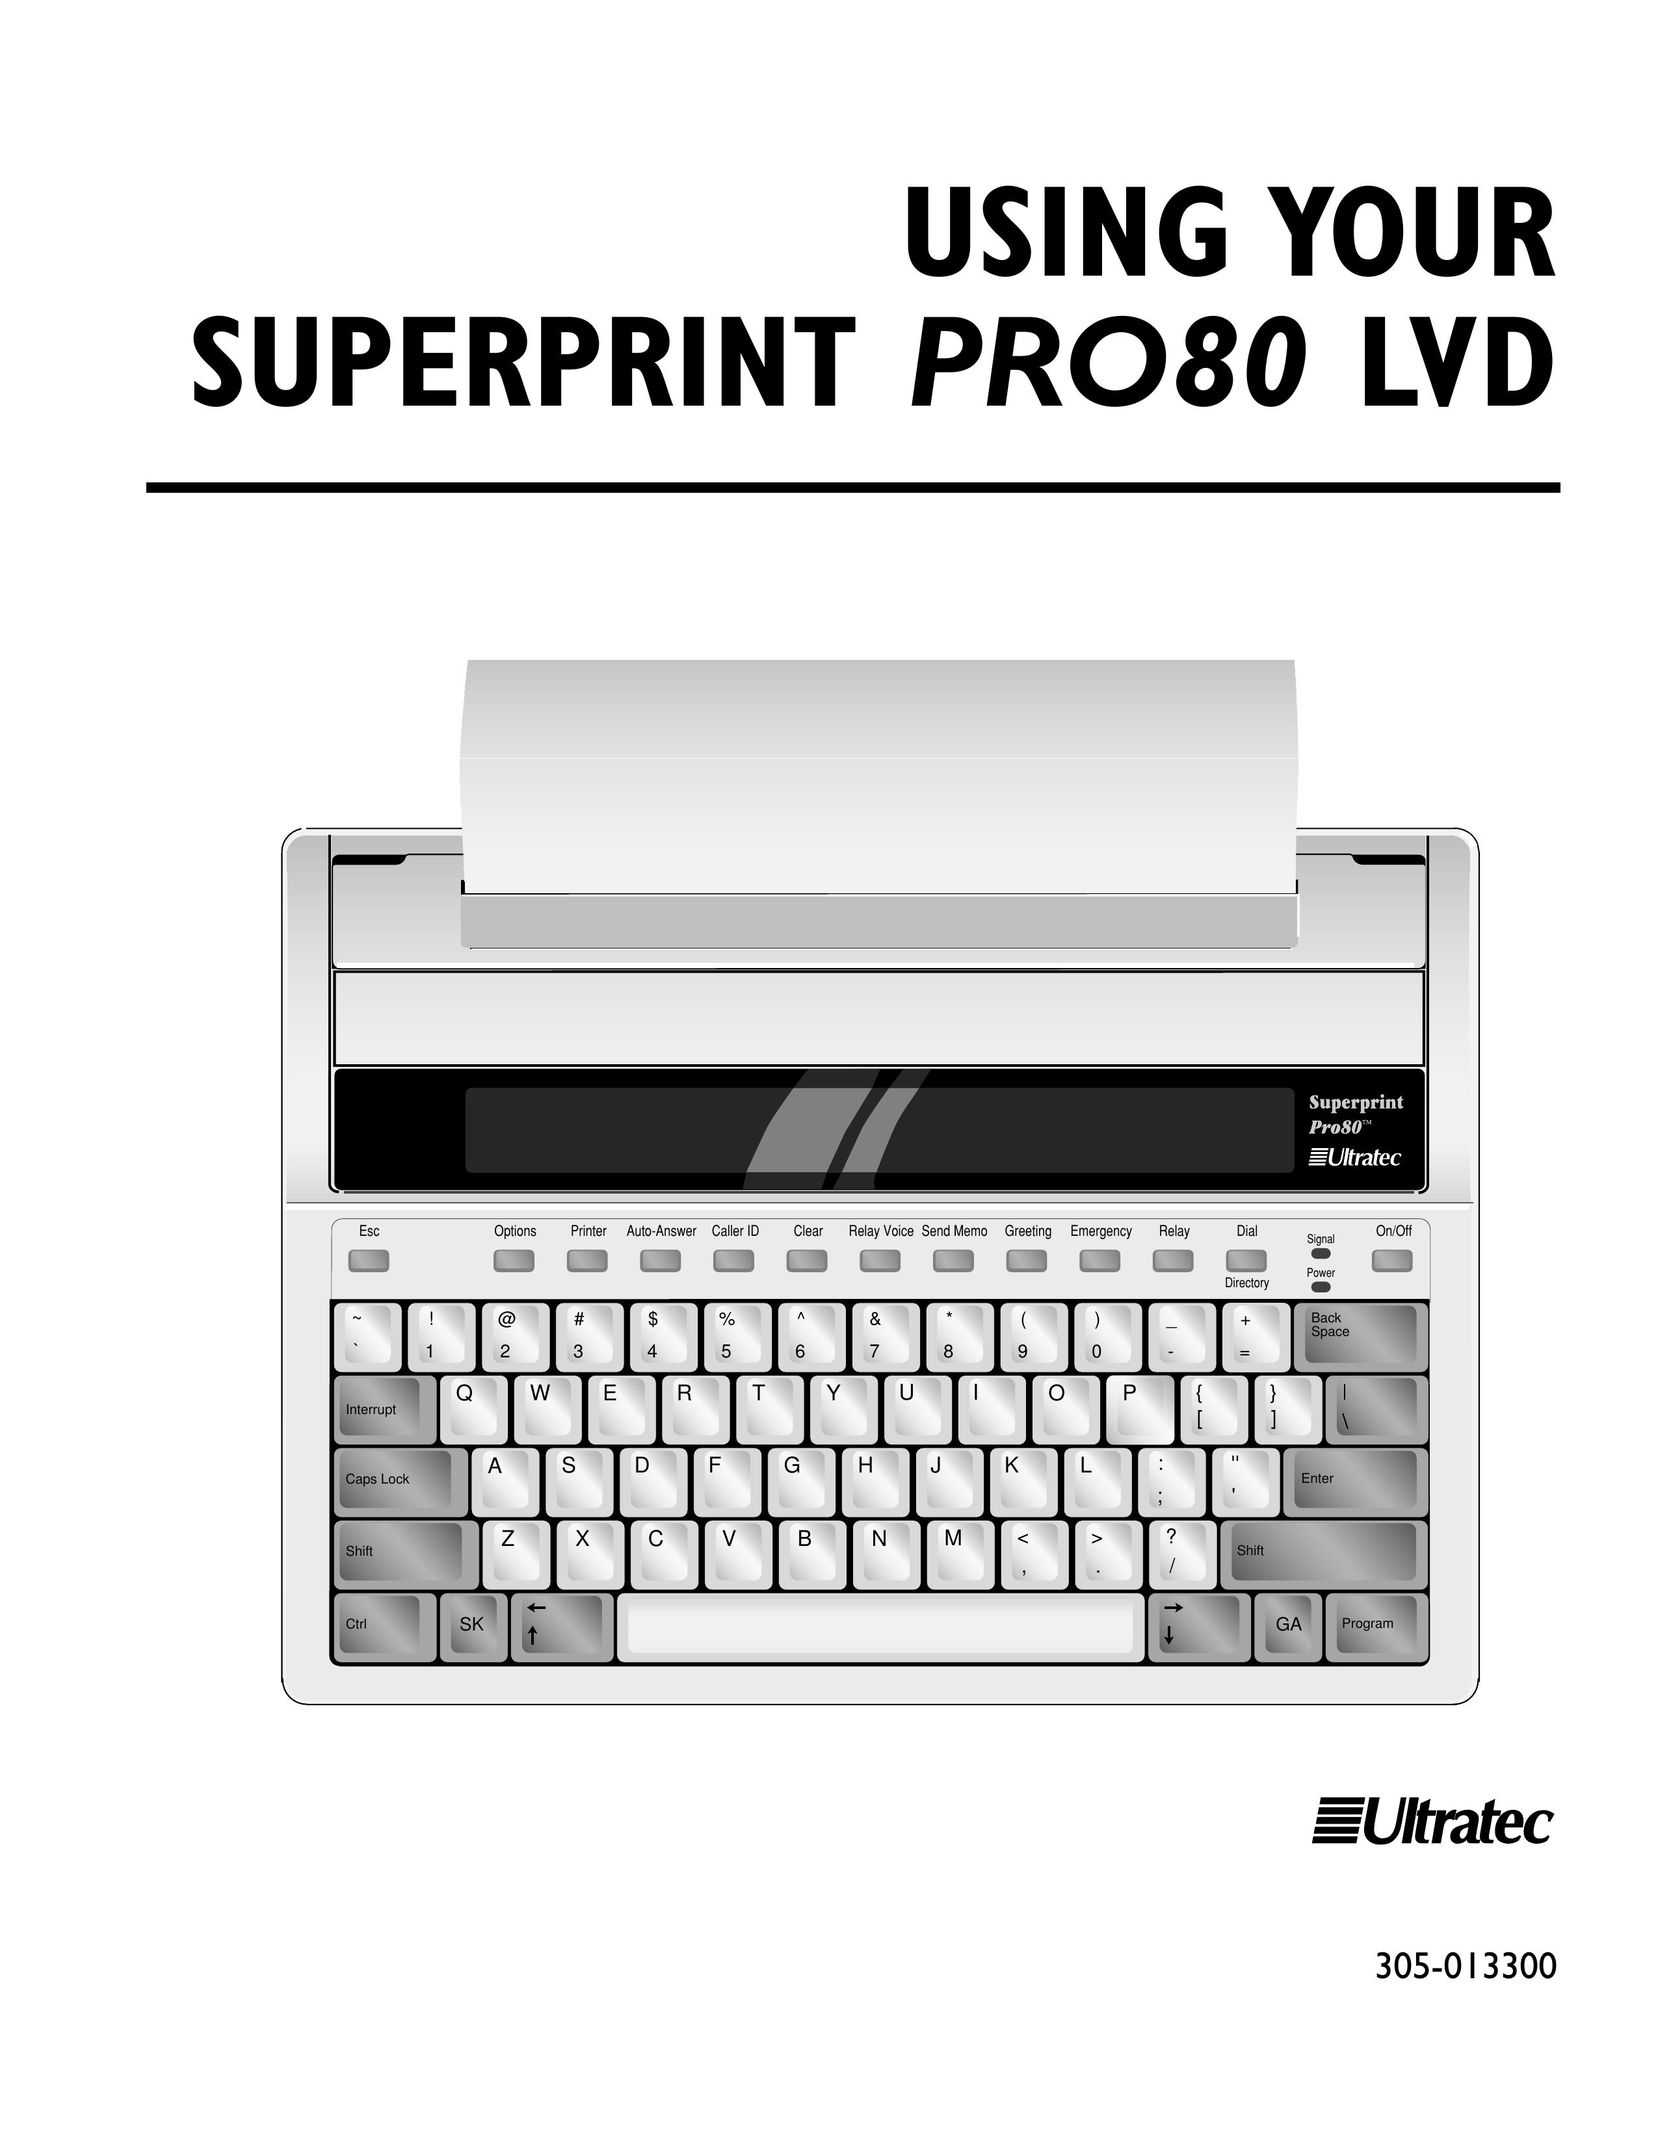 Ultratec PRO80 Printer User Manual